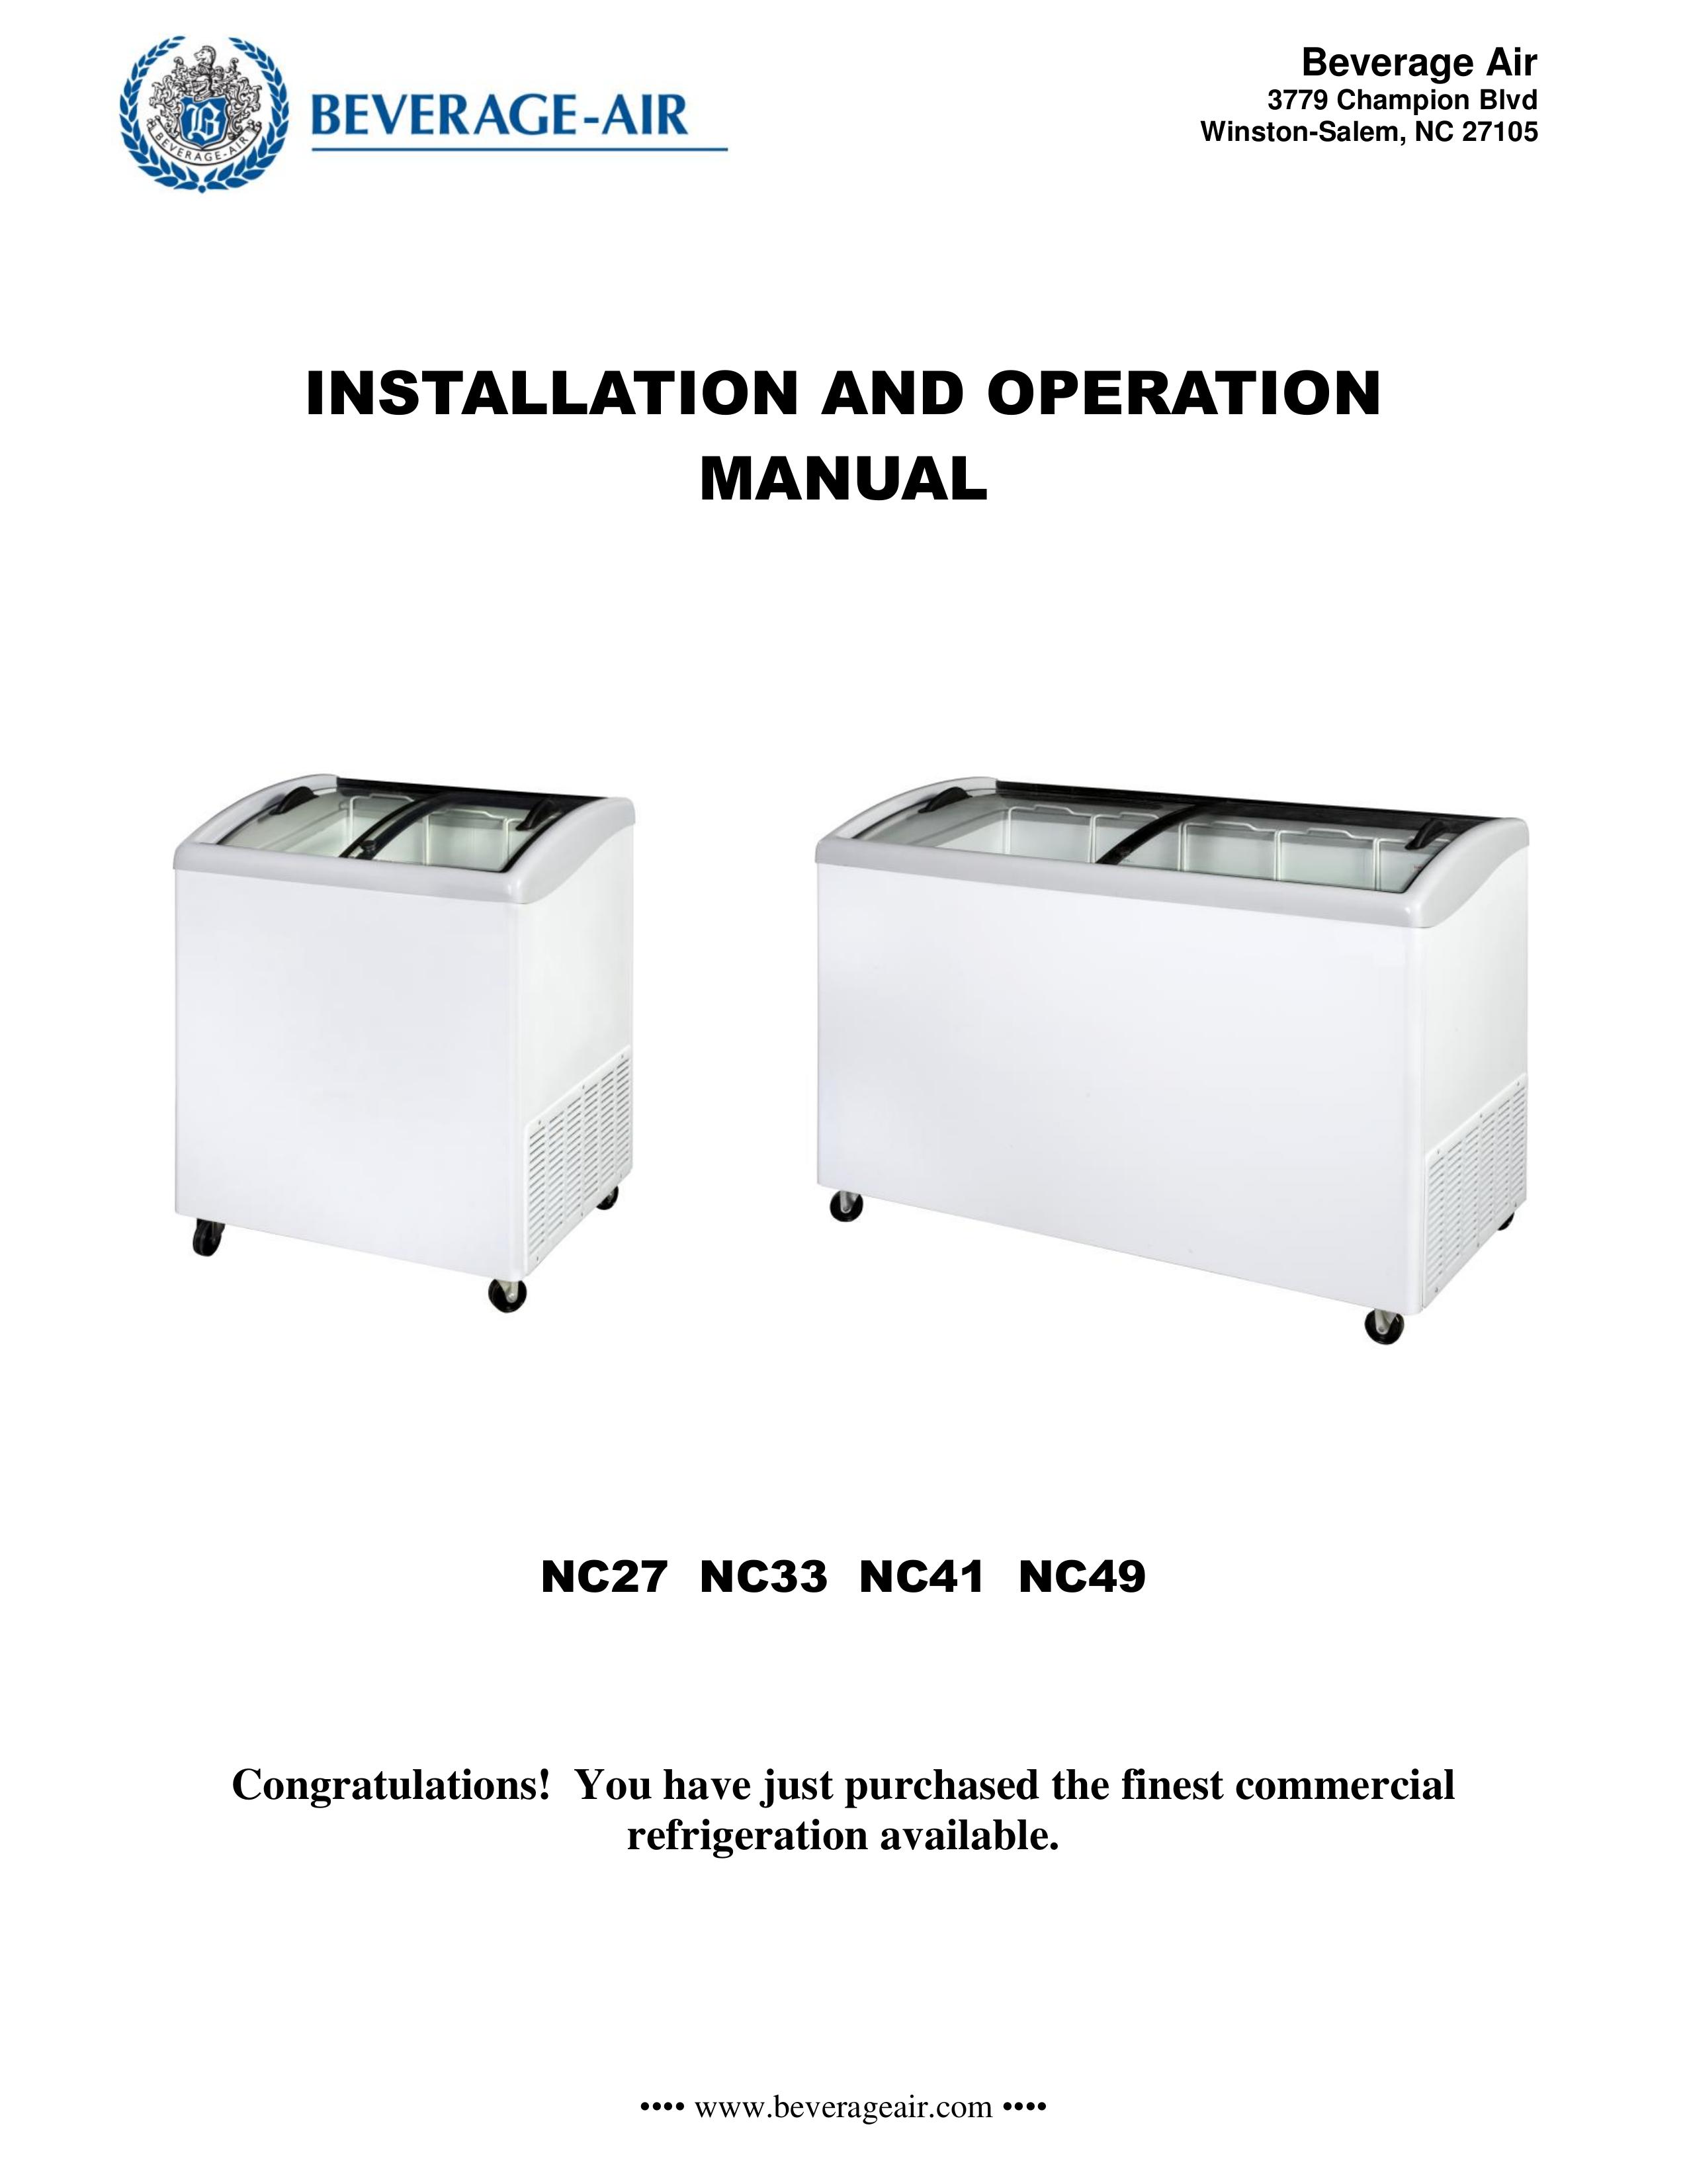 Beverage-Air NC41 Refrigerator User Manual